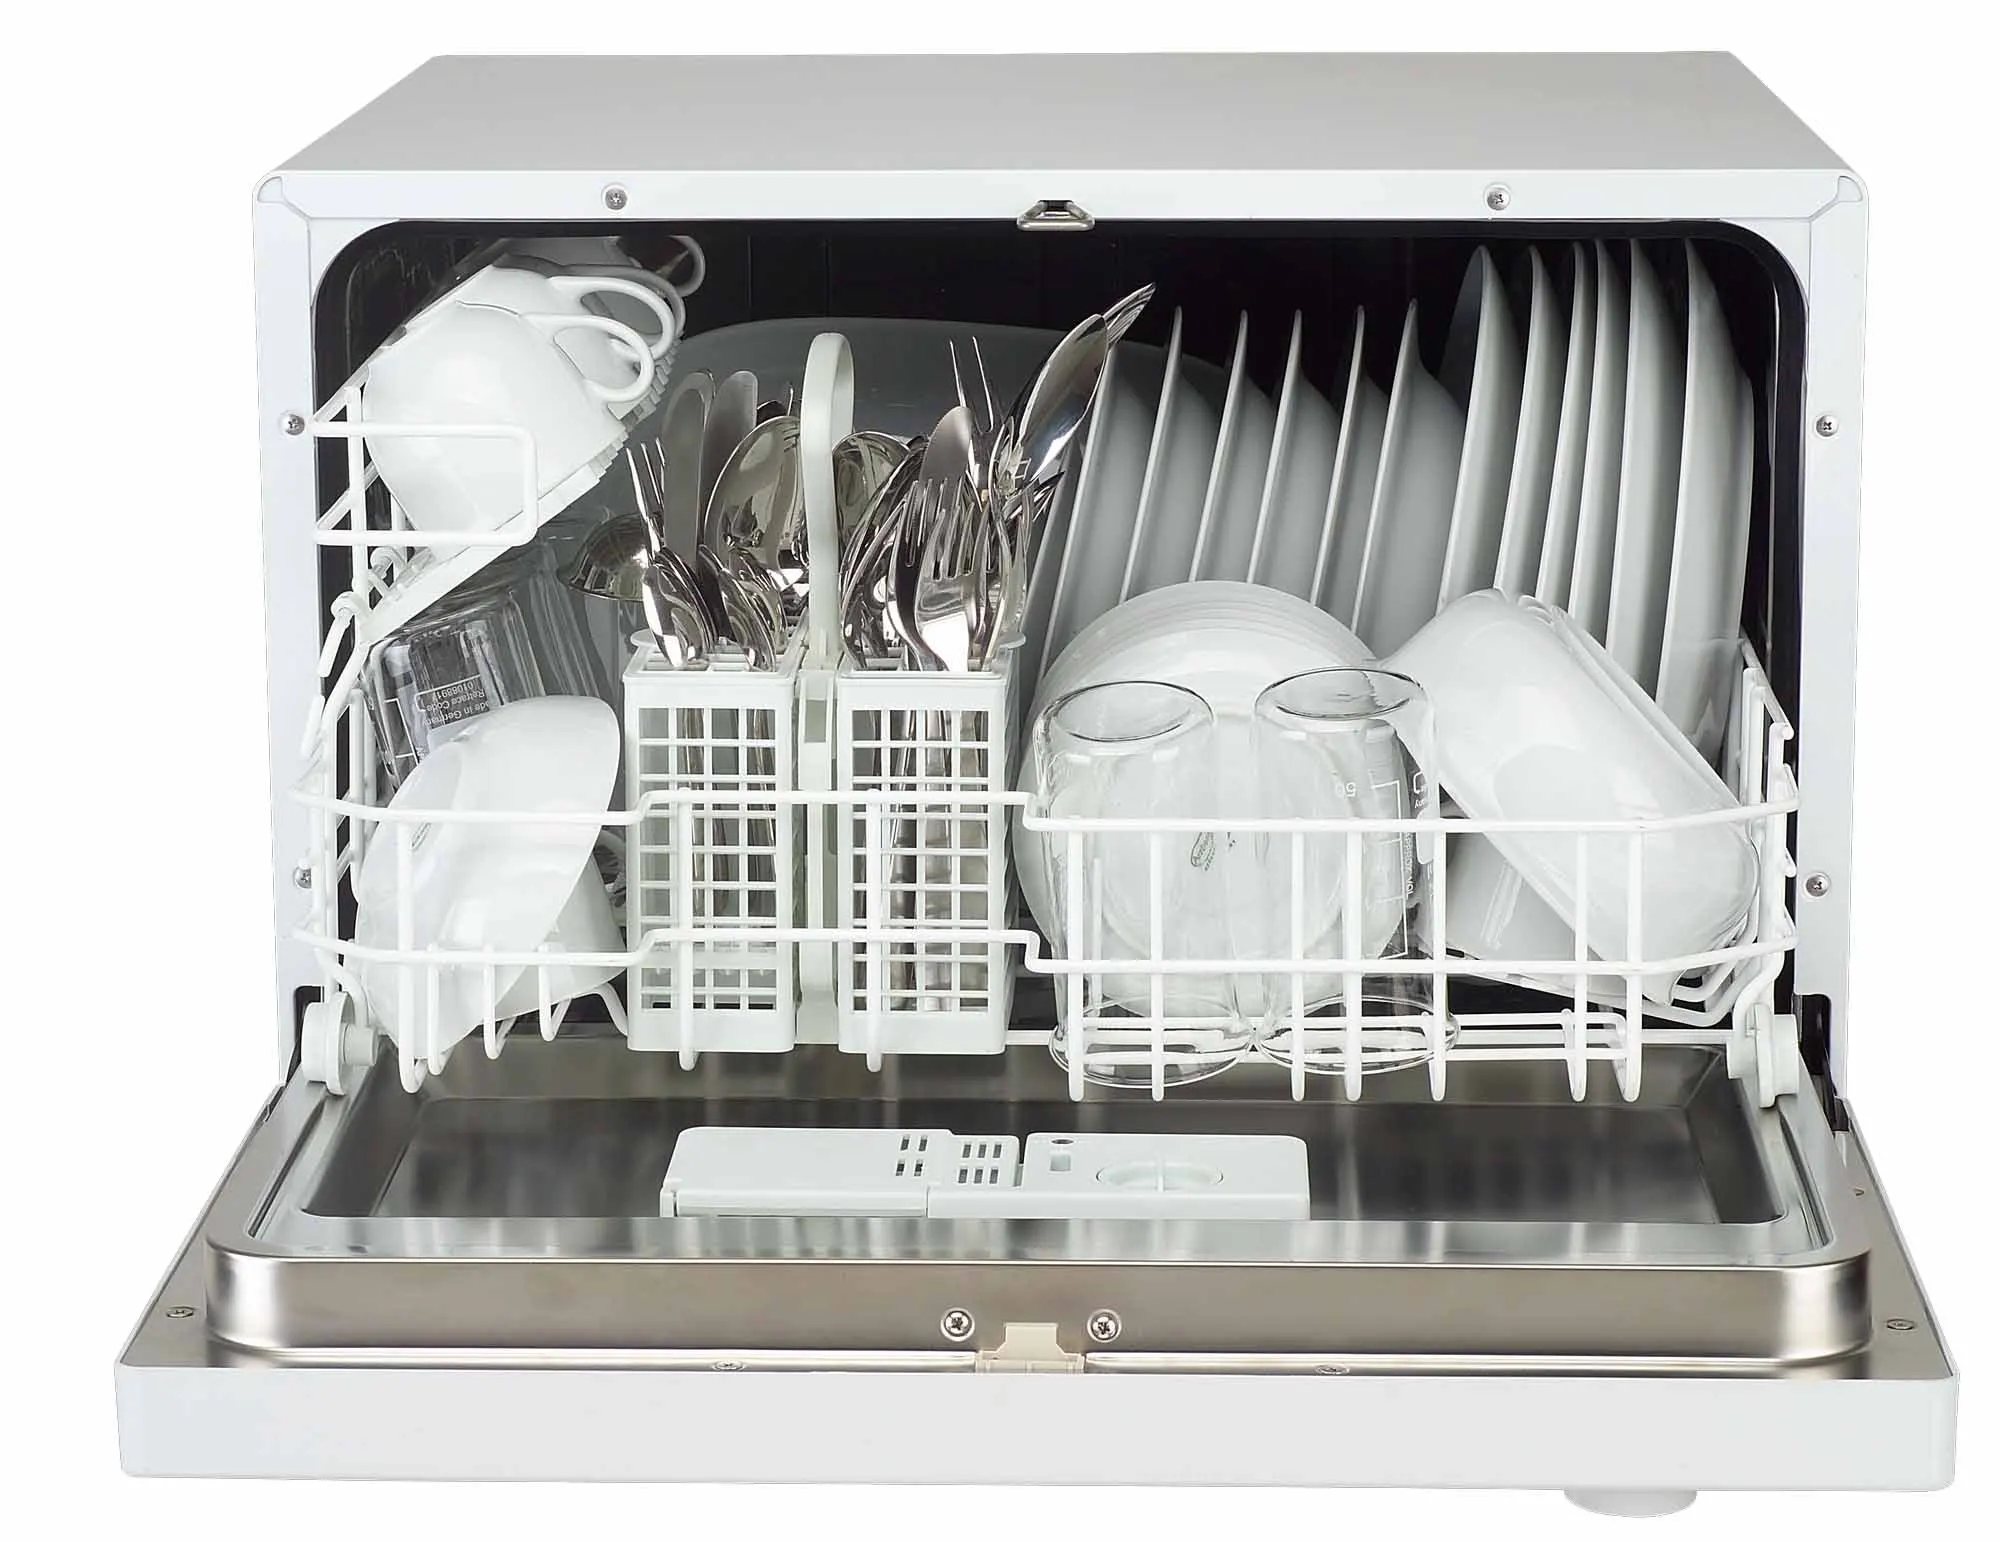 Посудомоечная машина маркет. Weissgauff 4006 посудомоечная машина. Посудомоечная машина бош SKT 5102 eu. Компактная посудомоечная машина Candy.